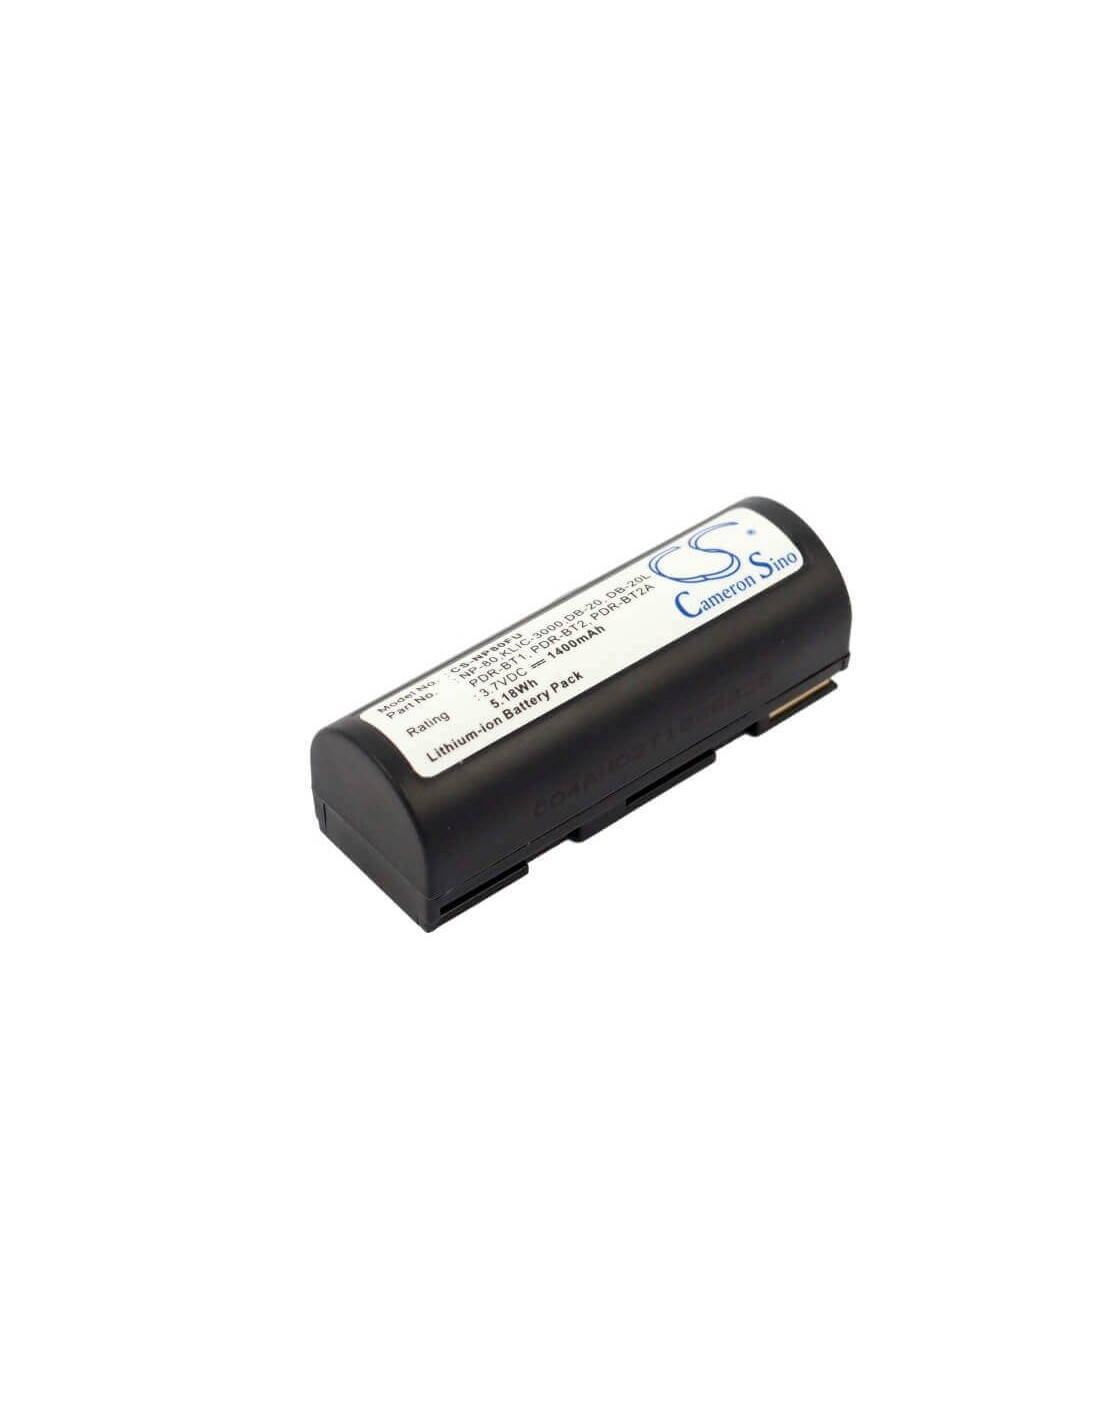 Battery for Kodak Dc4800, Dc4800 Zoom 3.7V, 1400mAh - 5.18Wh